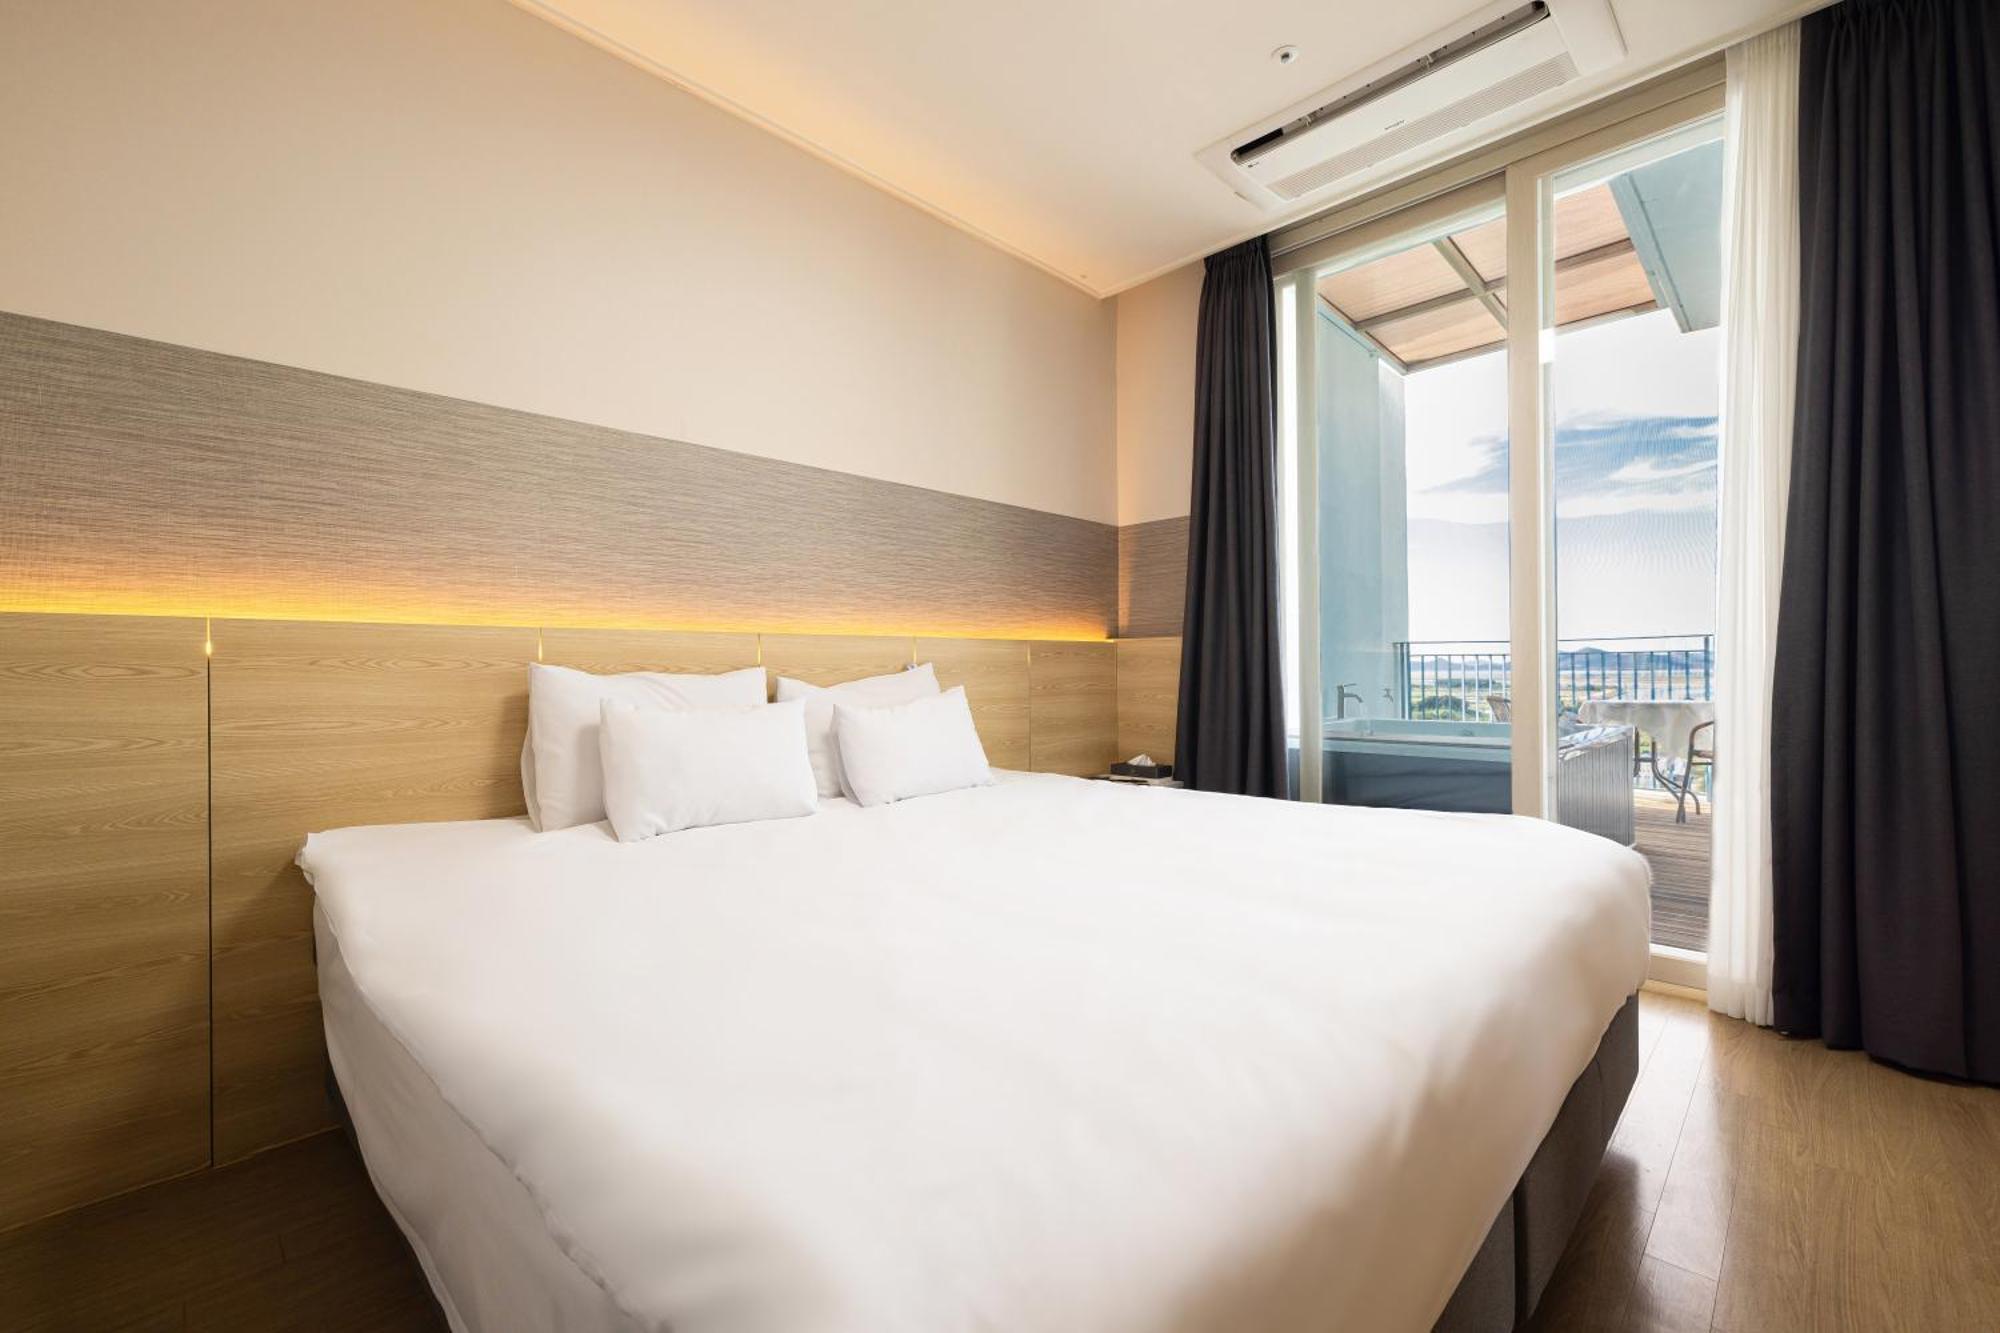 Ocean Sole View Hotel Incheon Esterno foto